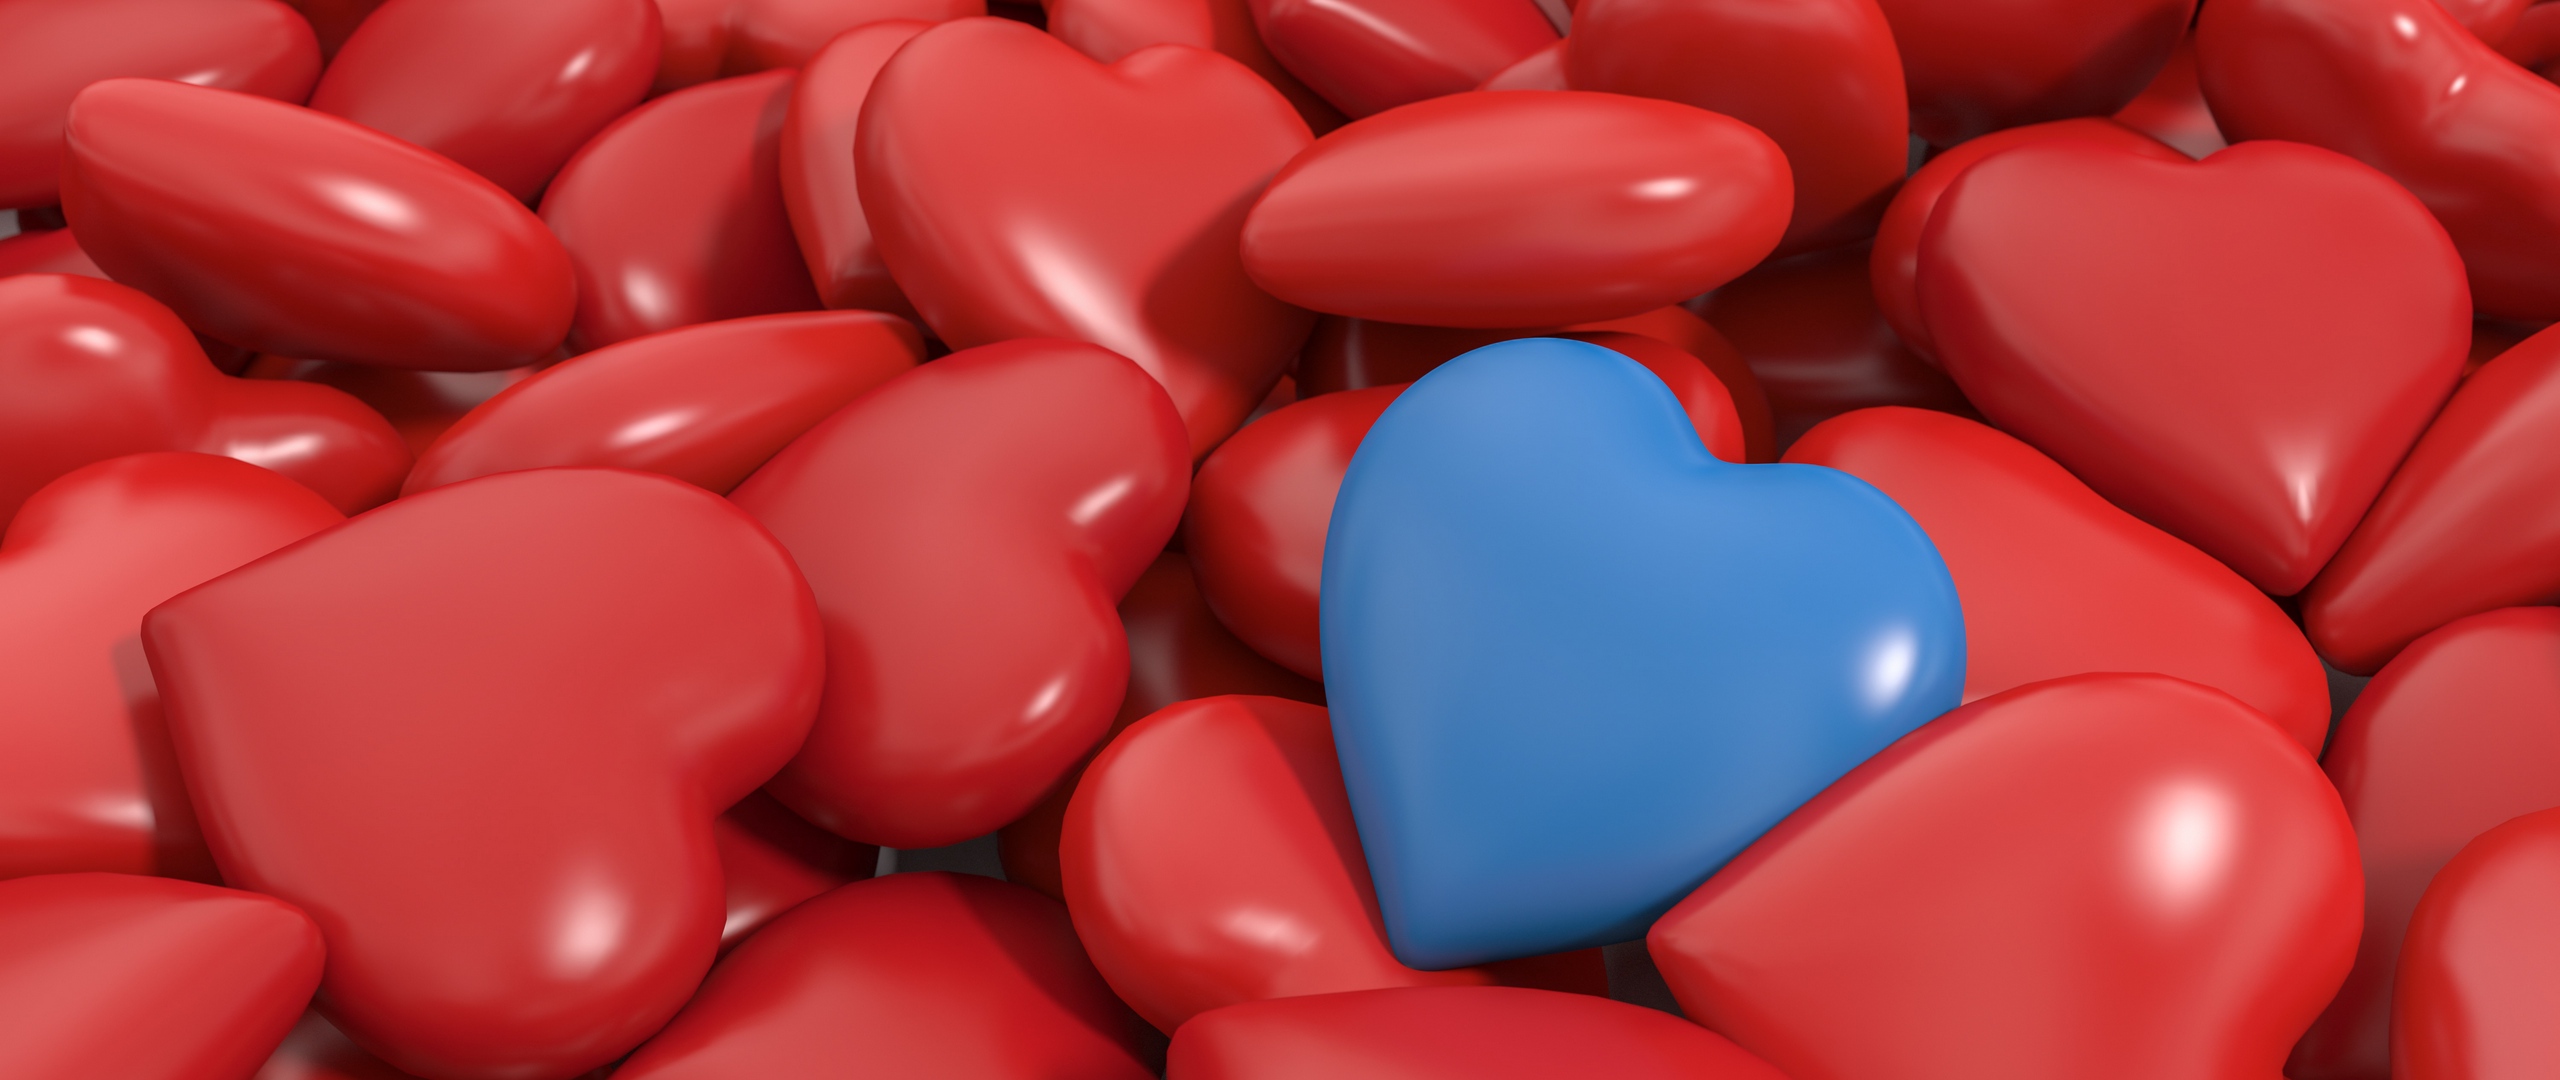 Wallpaper Heart, Red, Blue, 3d - Ultra Hd Heart Wallpaper Hd - HD Wallpaper 